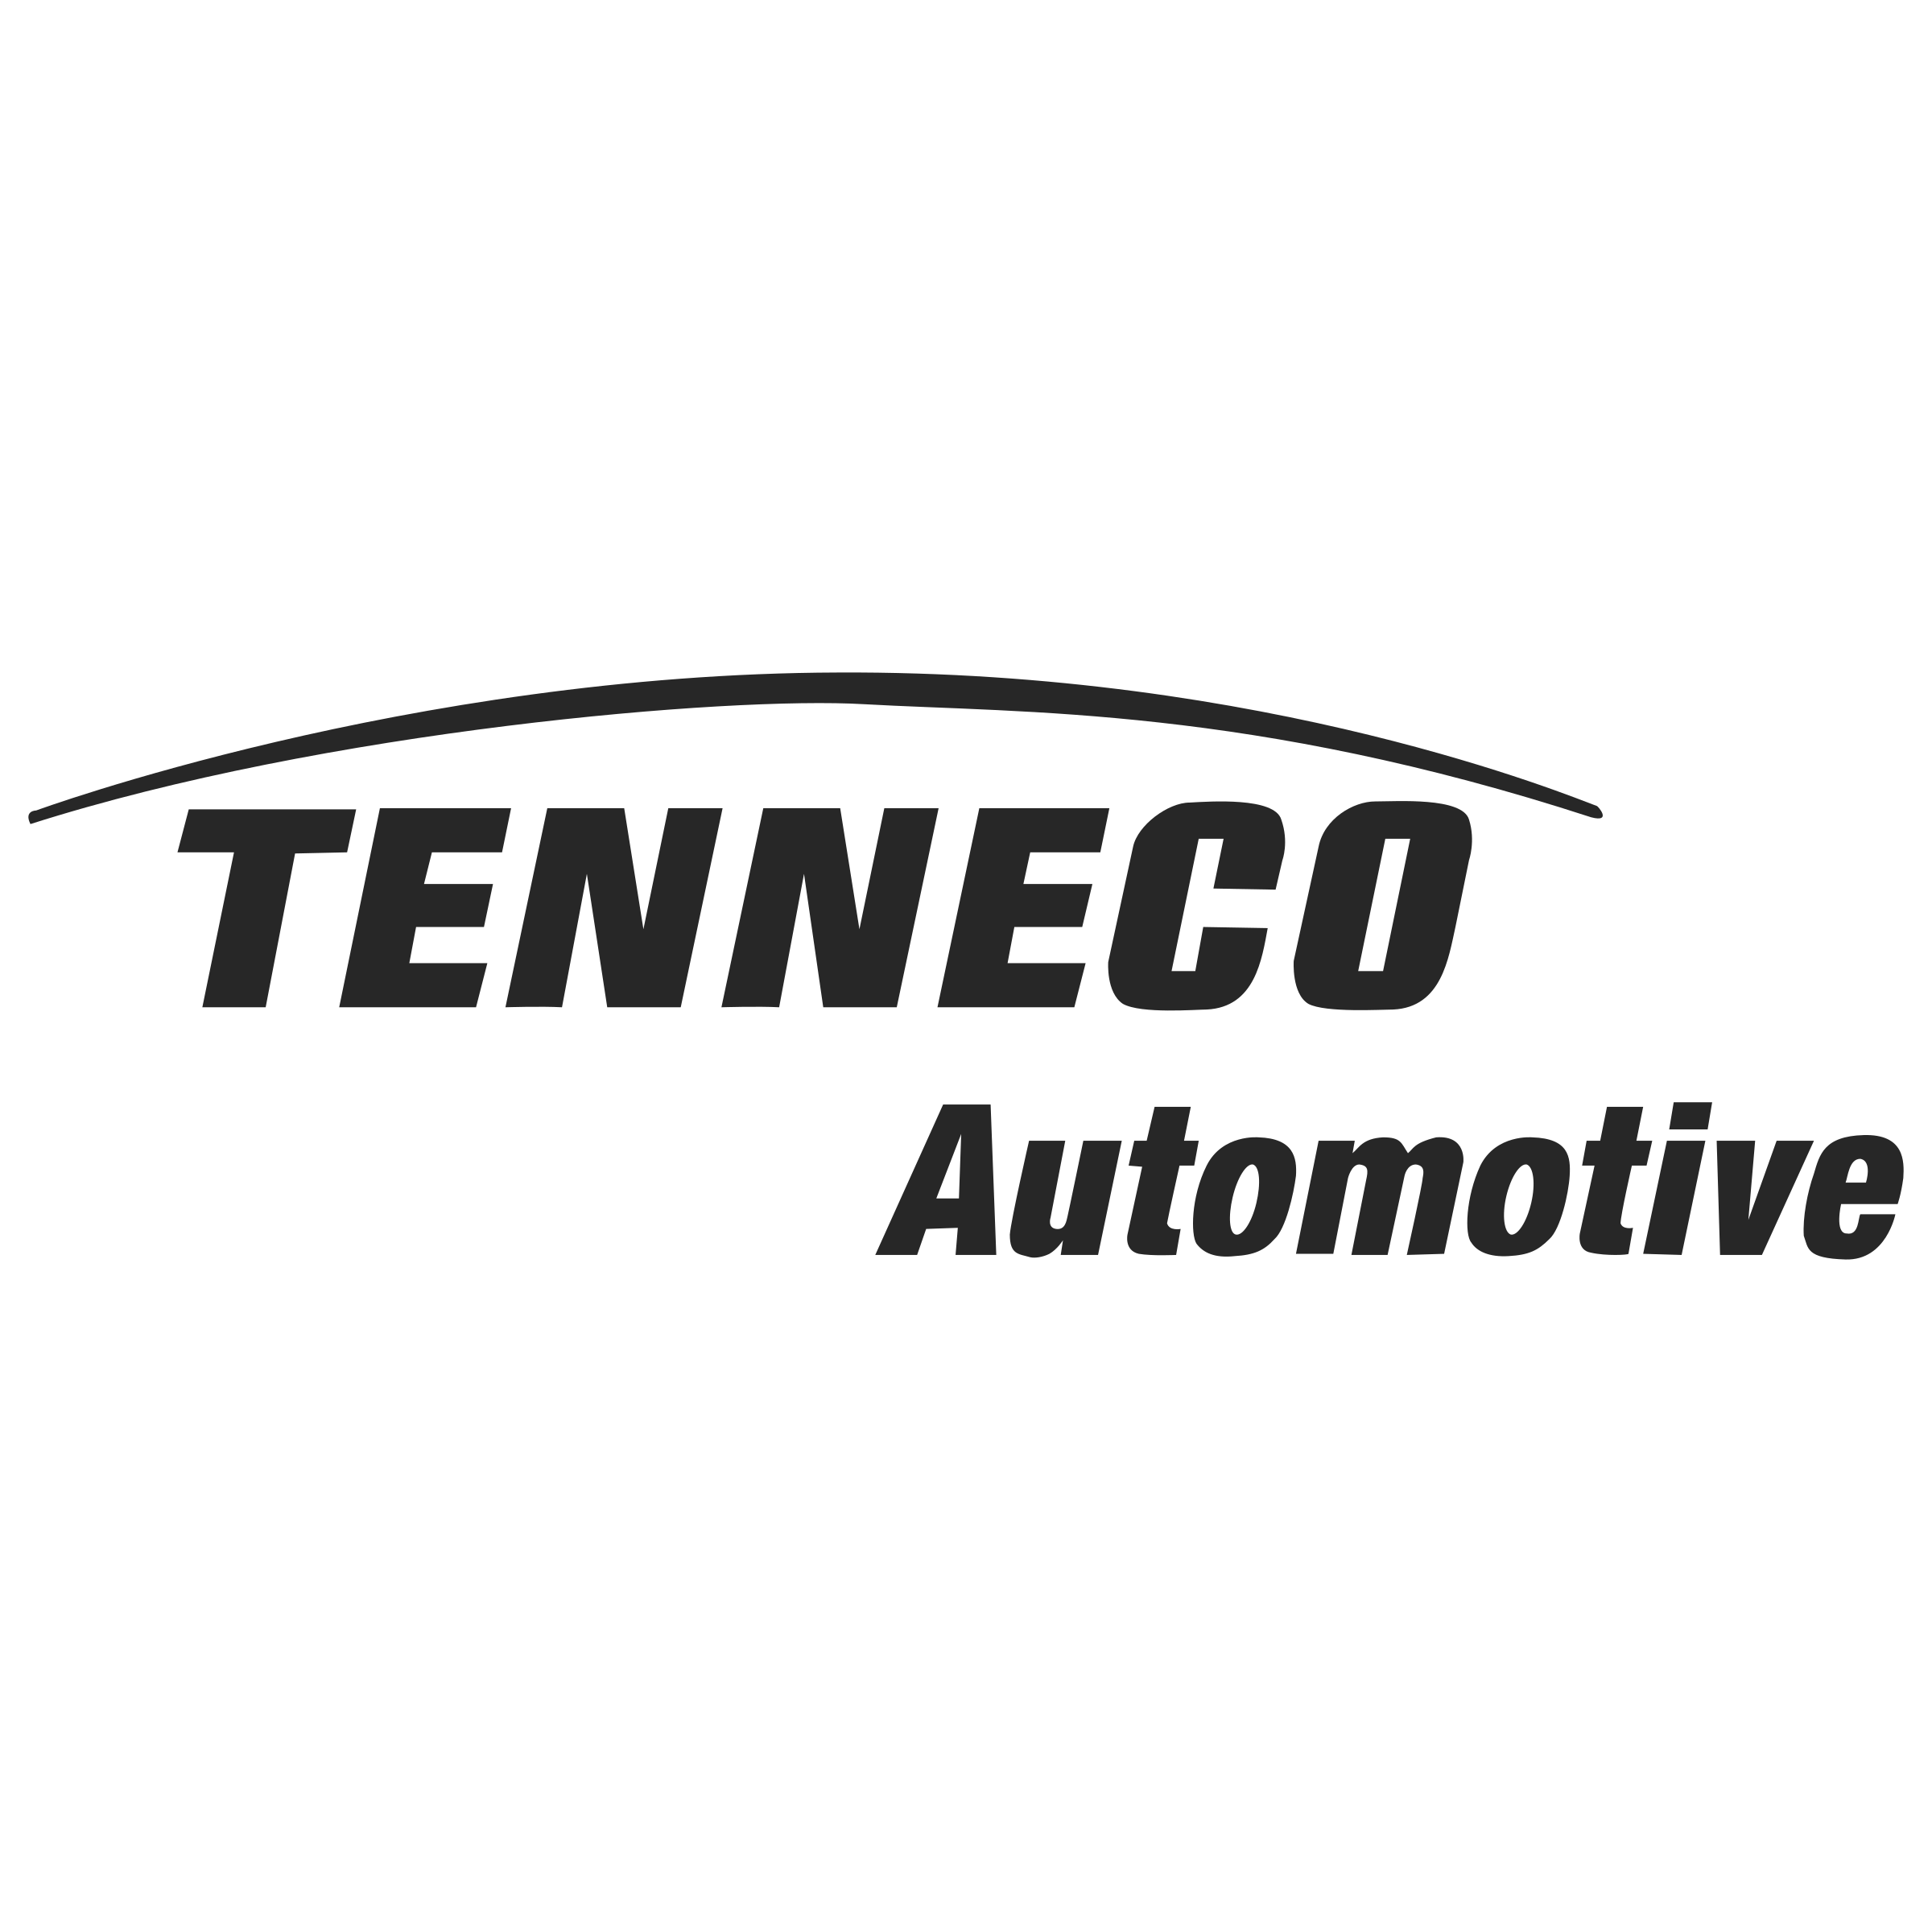 Tennco Logo - Tenneco Automotive Logo PNG Transparent & SVG Vector - Freebie Supply